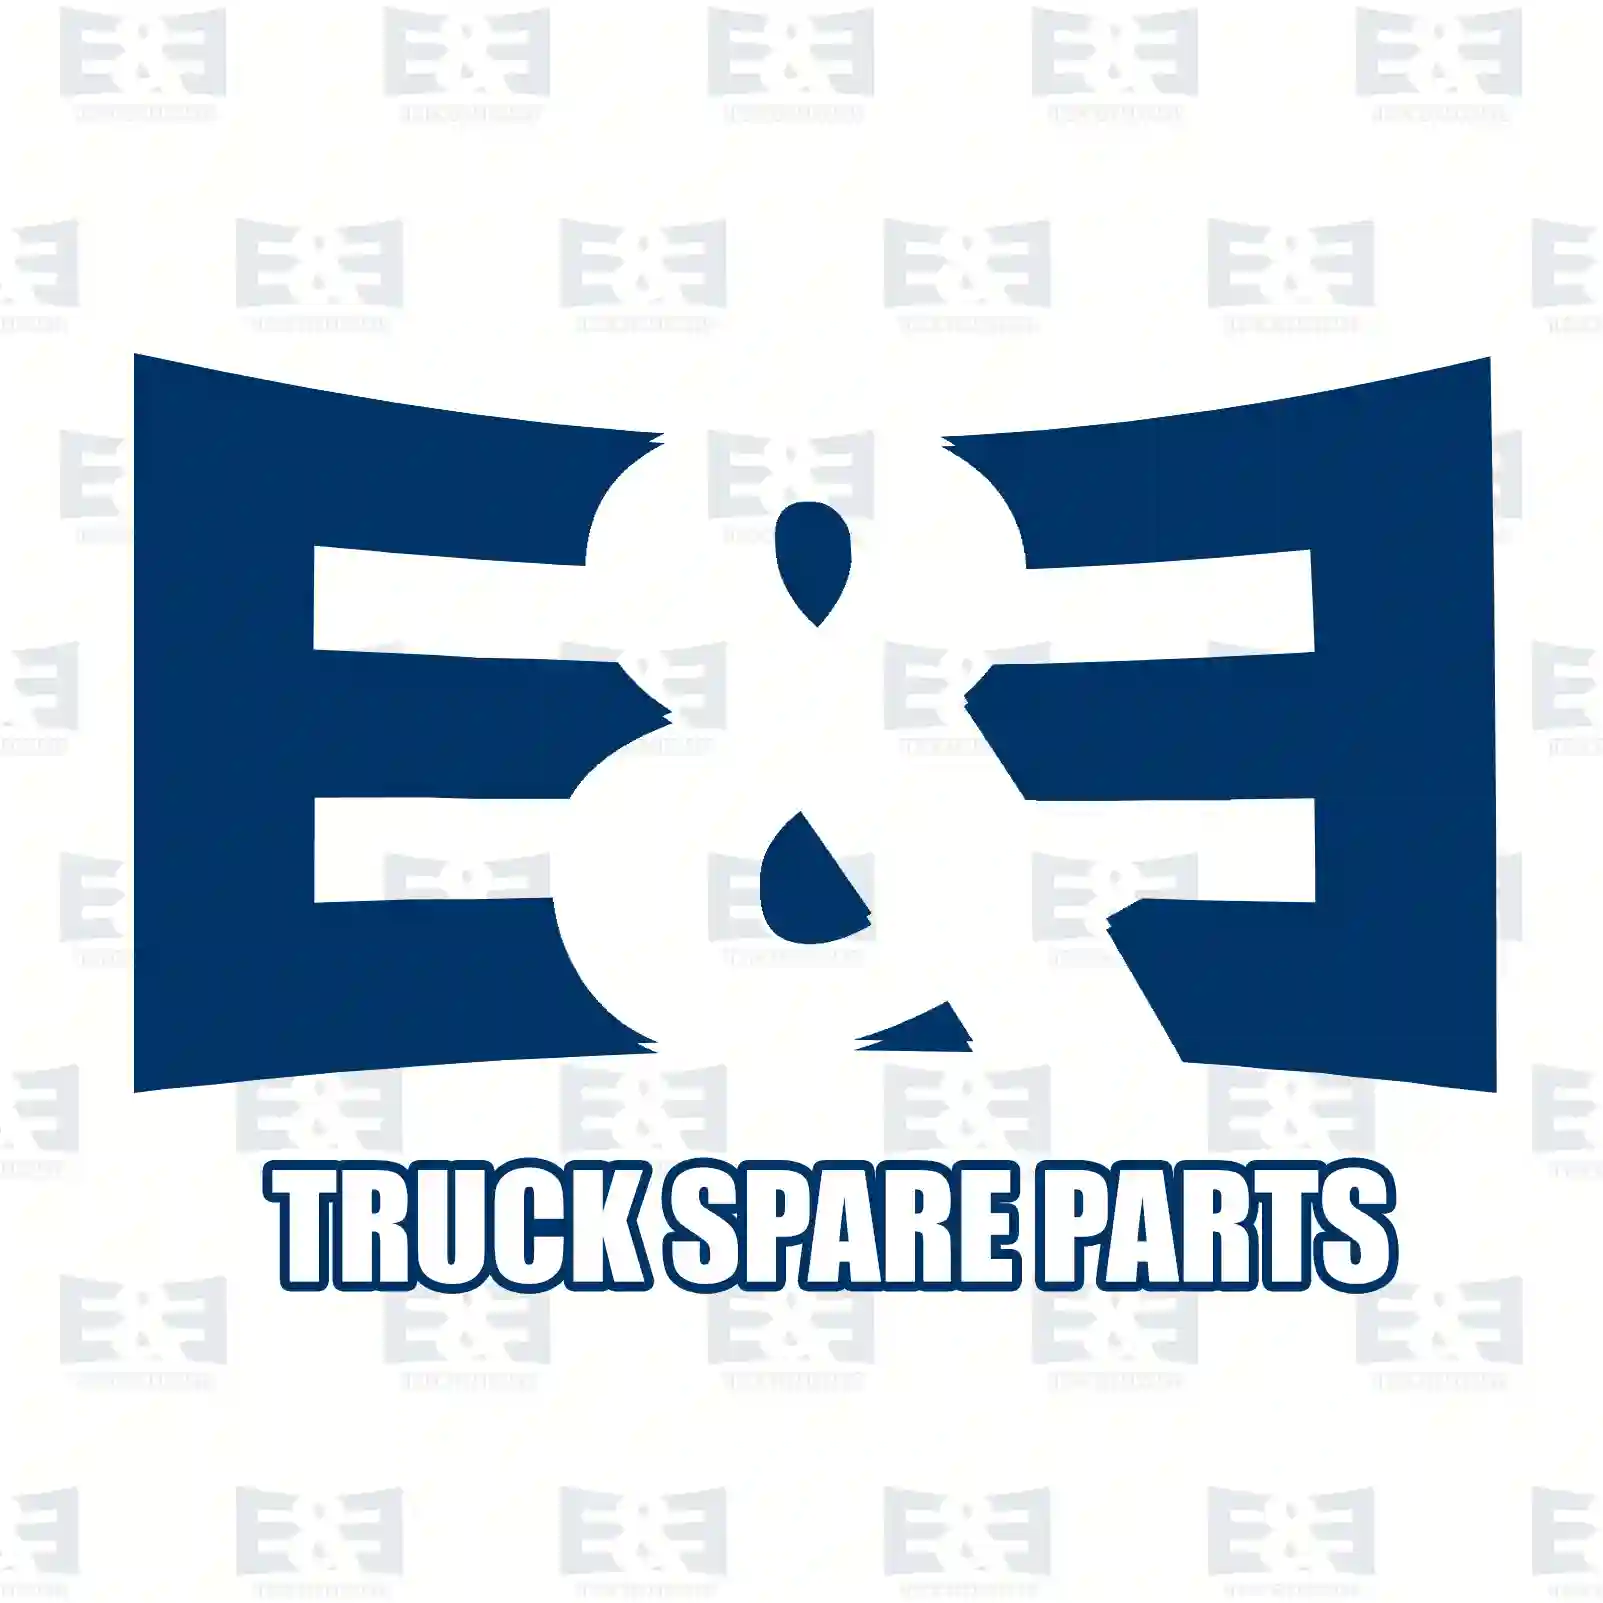 Fan, 2E2201530, 1362916080 ||  2E2201530 E&E Truck Spare Parts | Truck Spare Parts, Auotomotive Spare Parts Fan, 2E2201530, 1362916080 ||  2E2201530 E&E Truck Spare Parts | Truck Spare Parts, Auotomotive Spare Parts